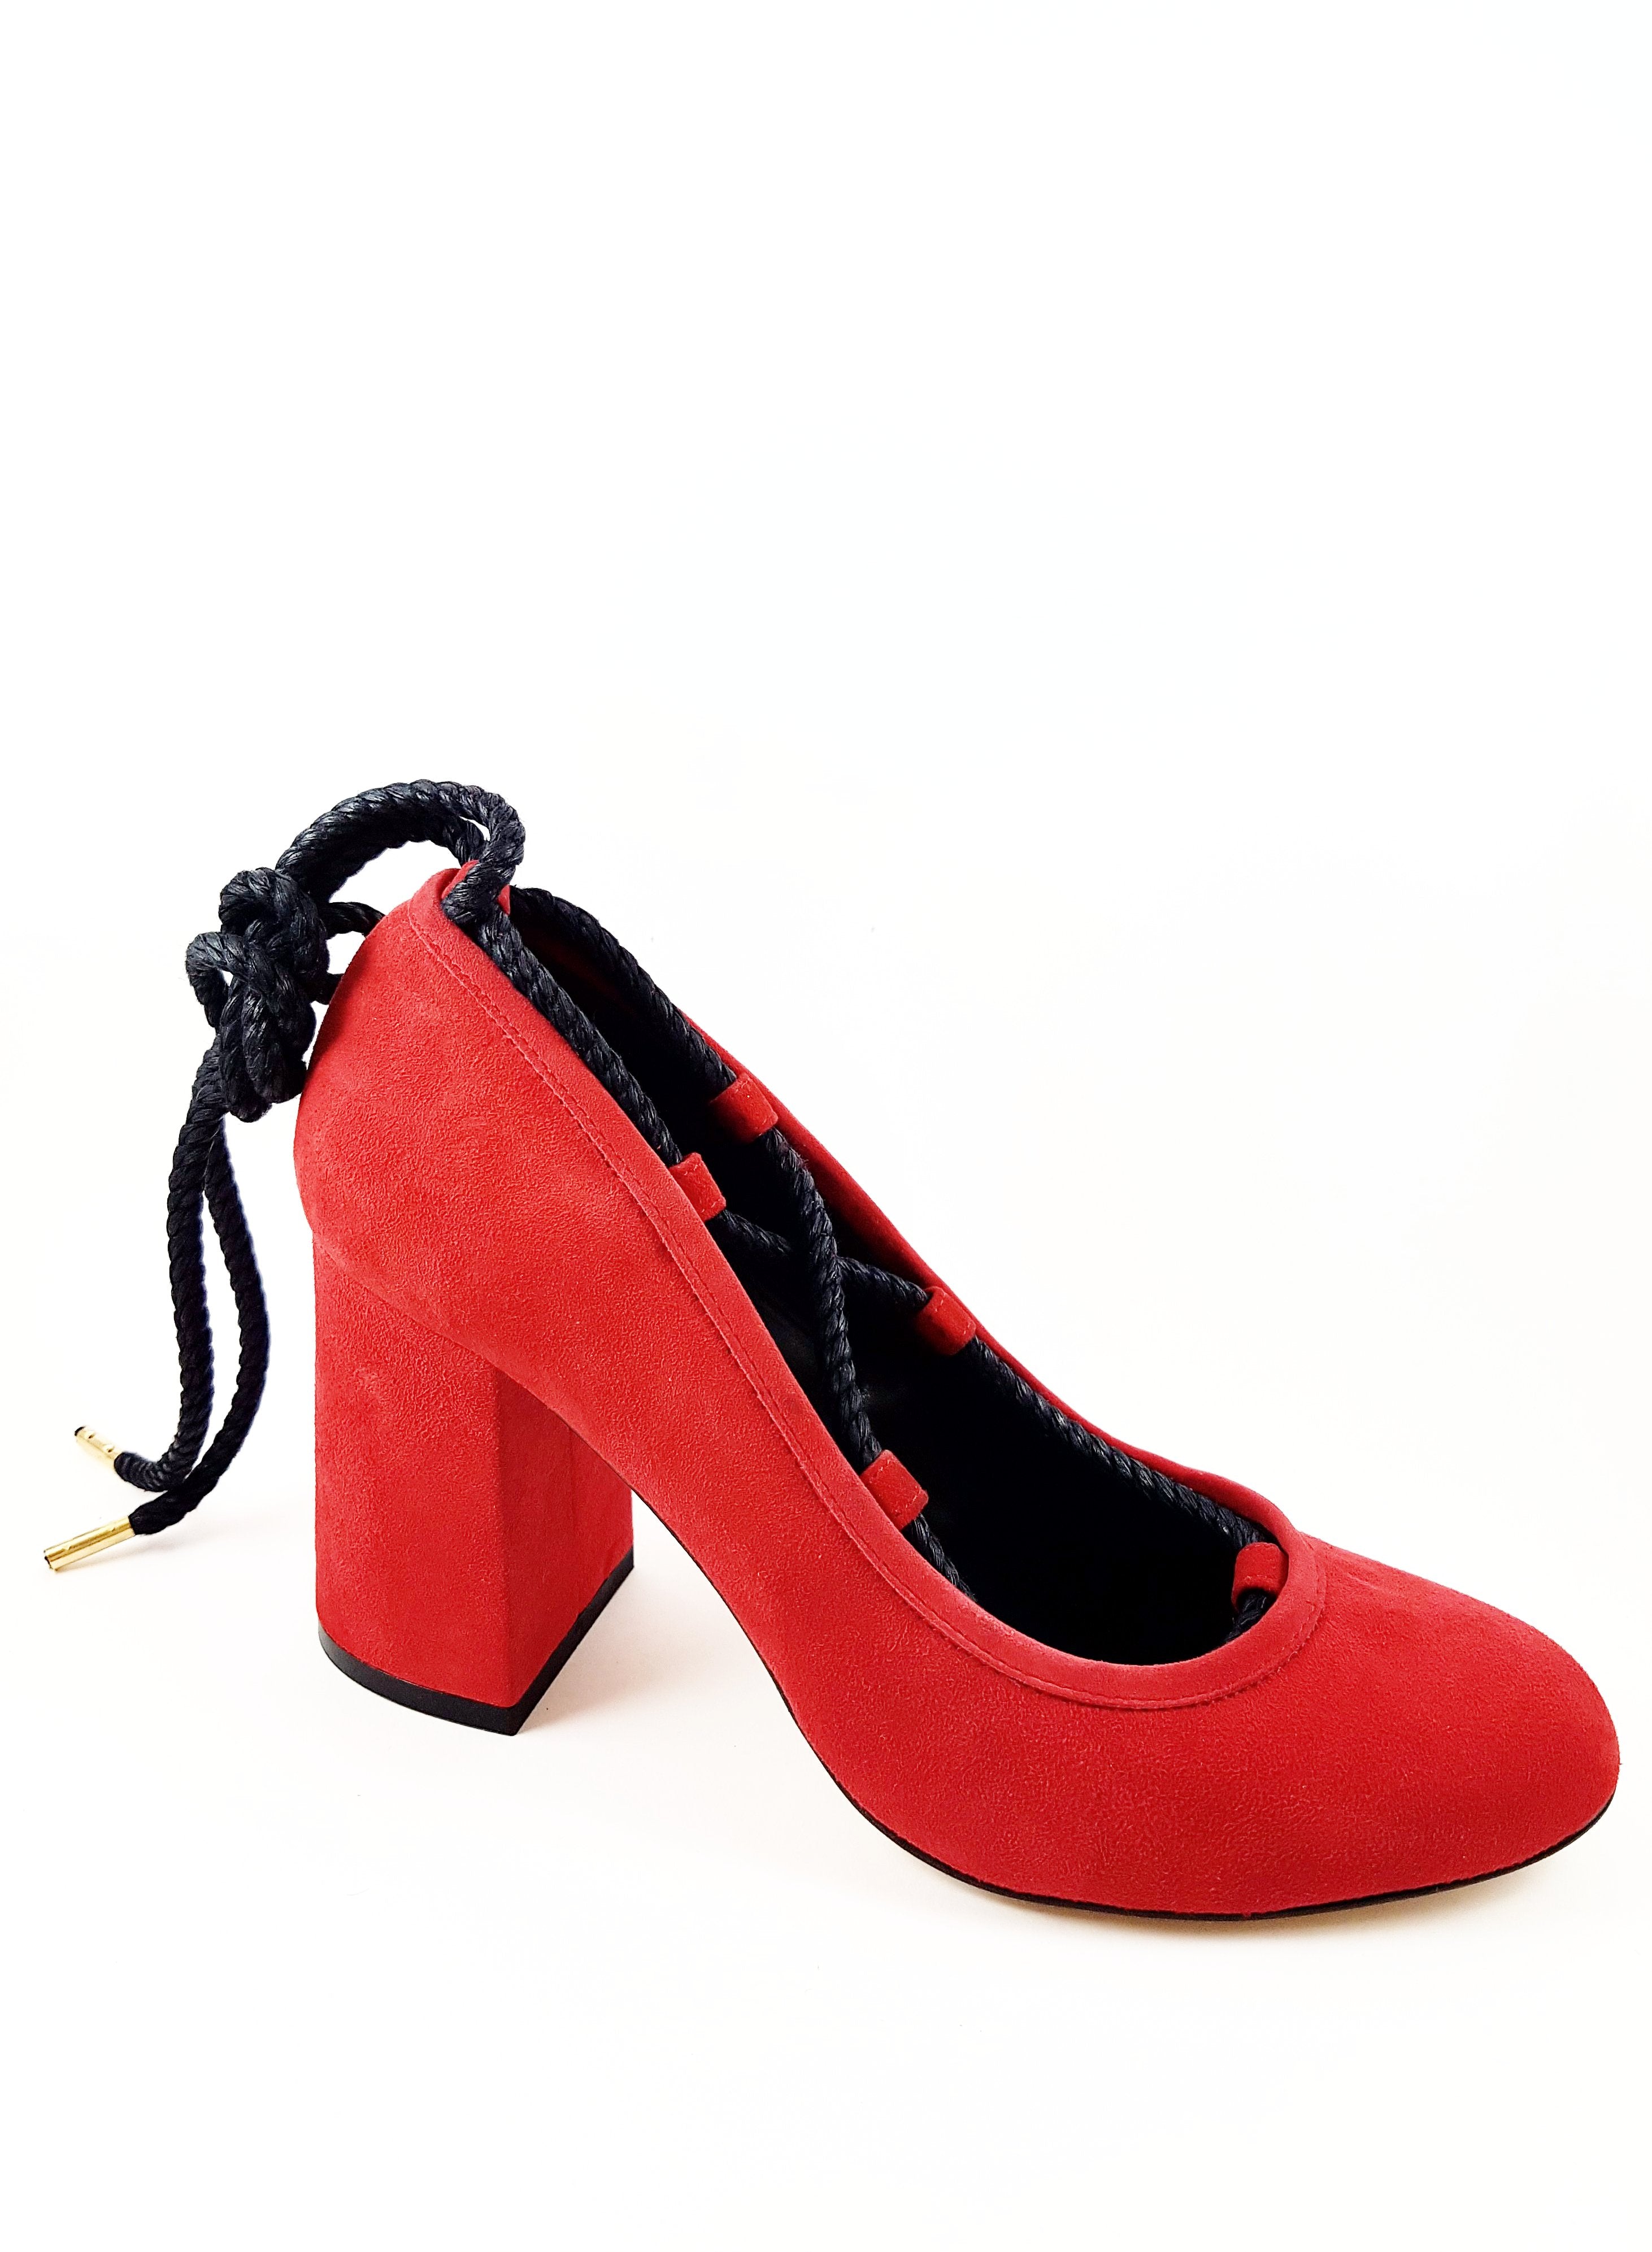 Piluca Passion Red suede block heel pumps